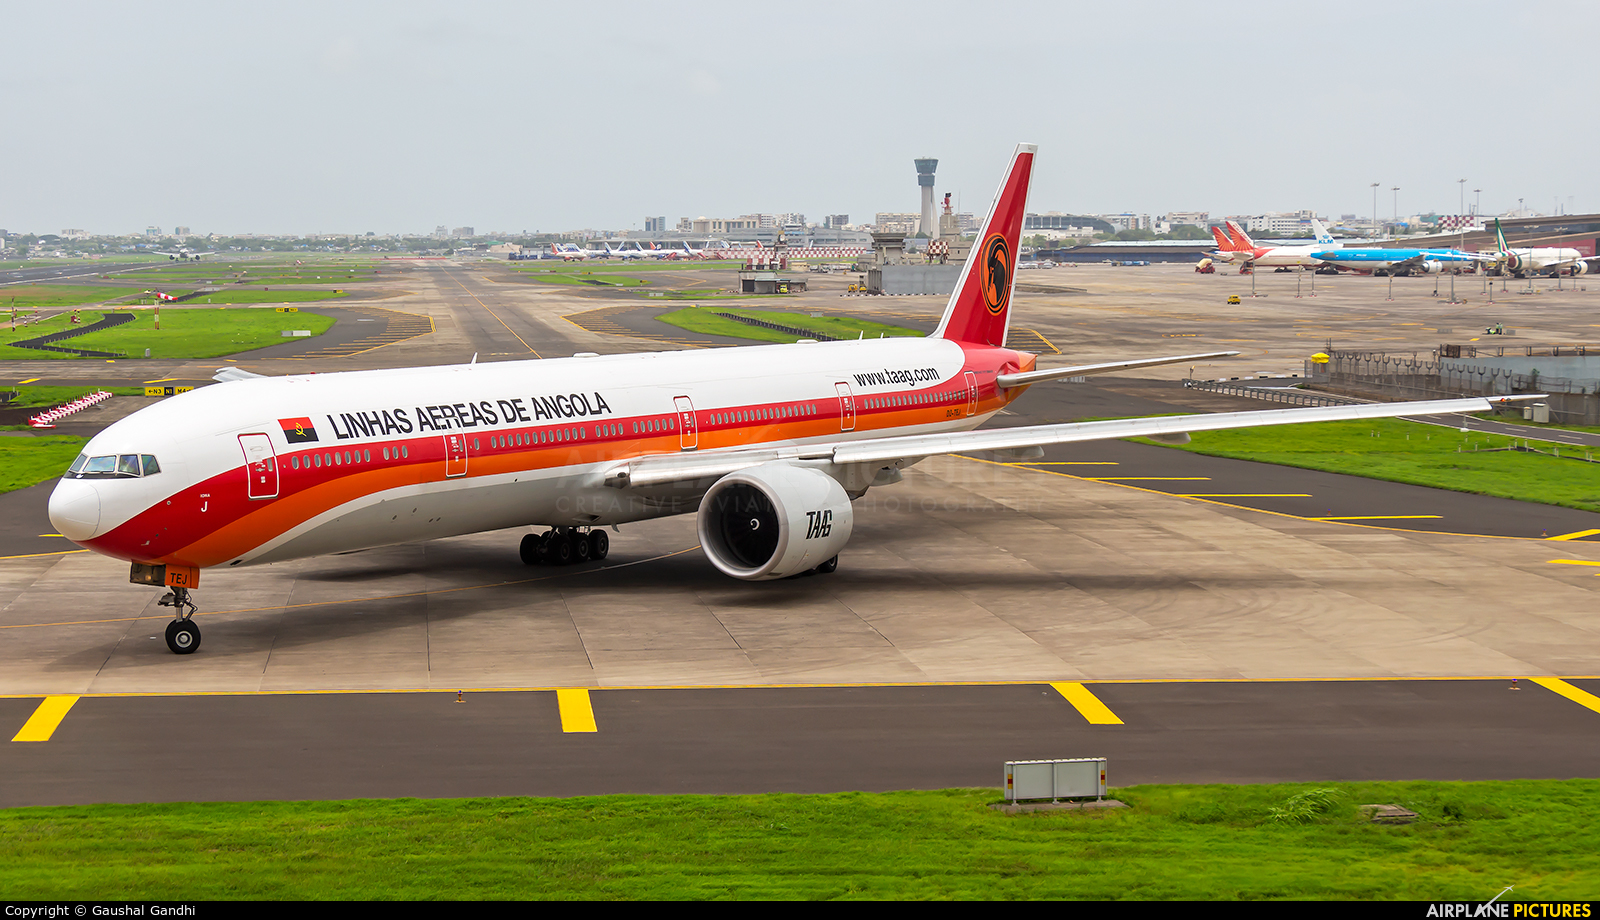 TAAG - Angola Airlines D2-TEJ aircraft at Mumbai - Chhatrapati Shivaji Intl